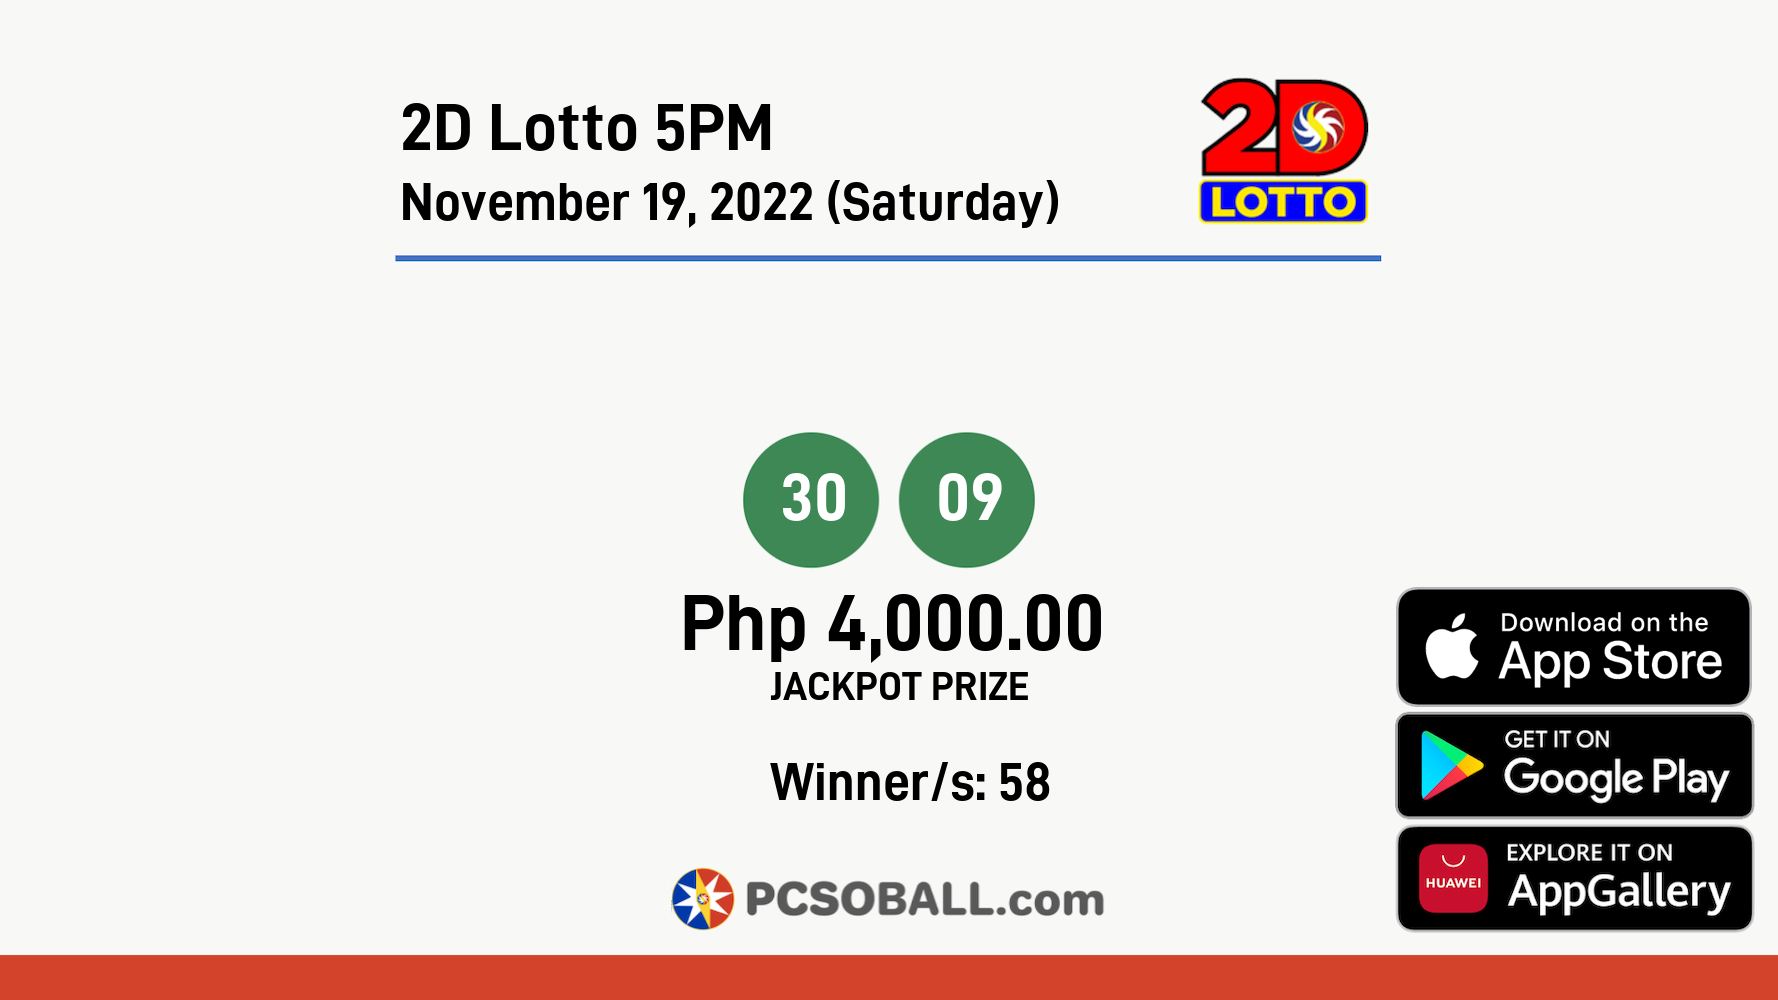 2D Lotto 5PM November 19, 2022 (Saturday) Result